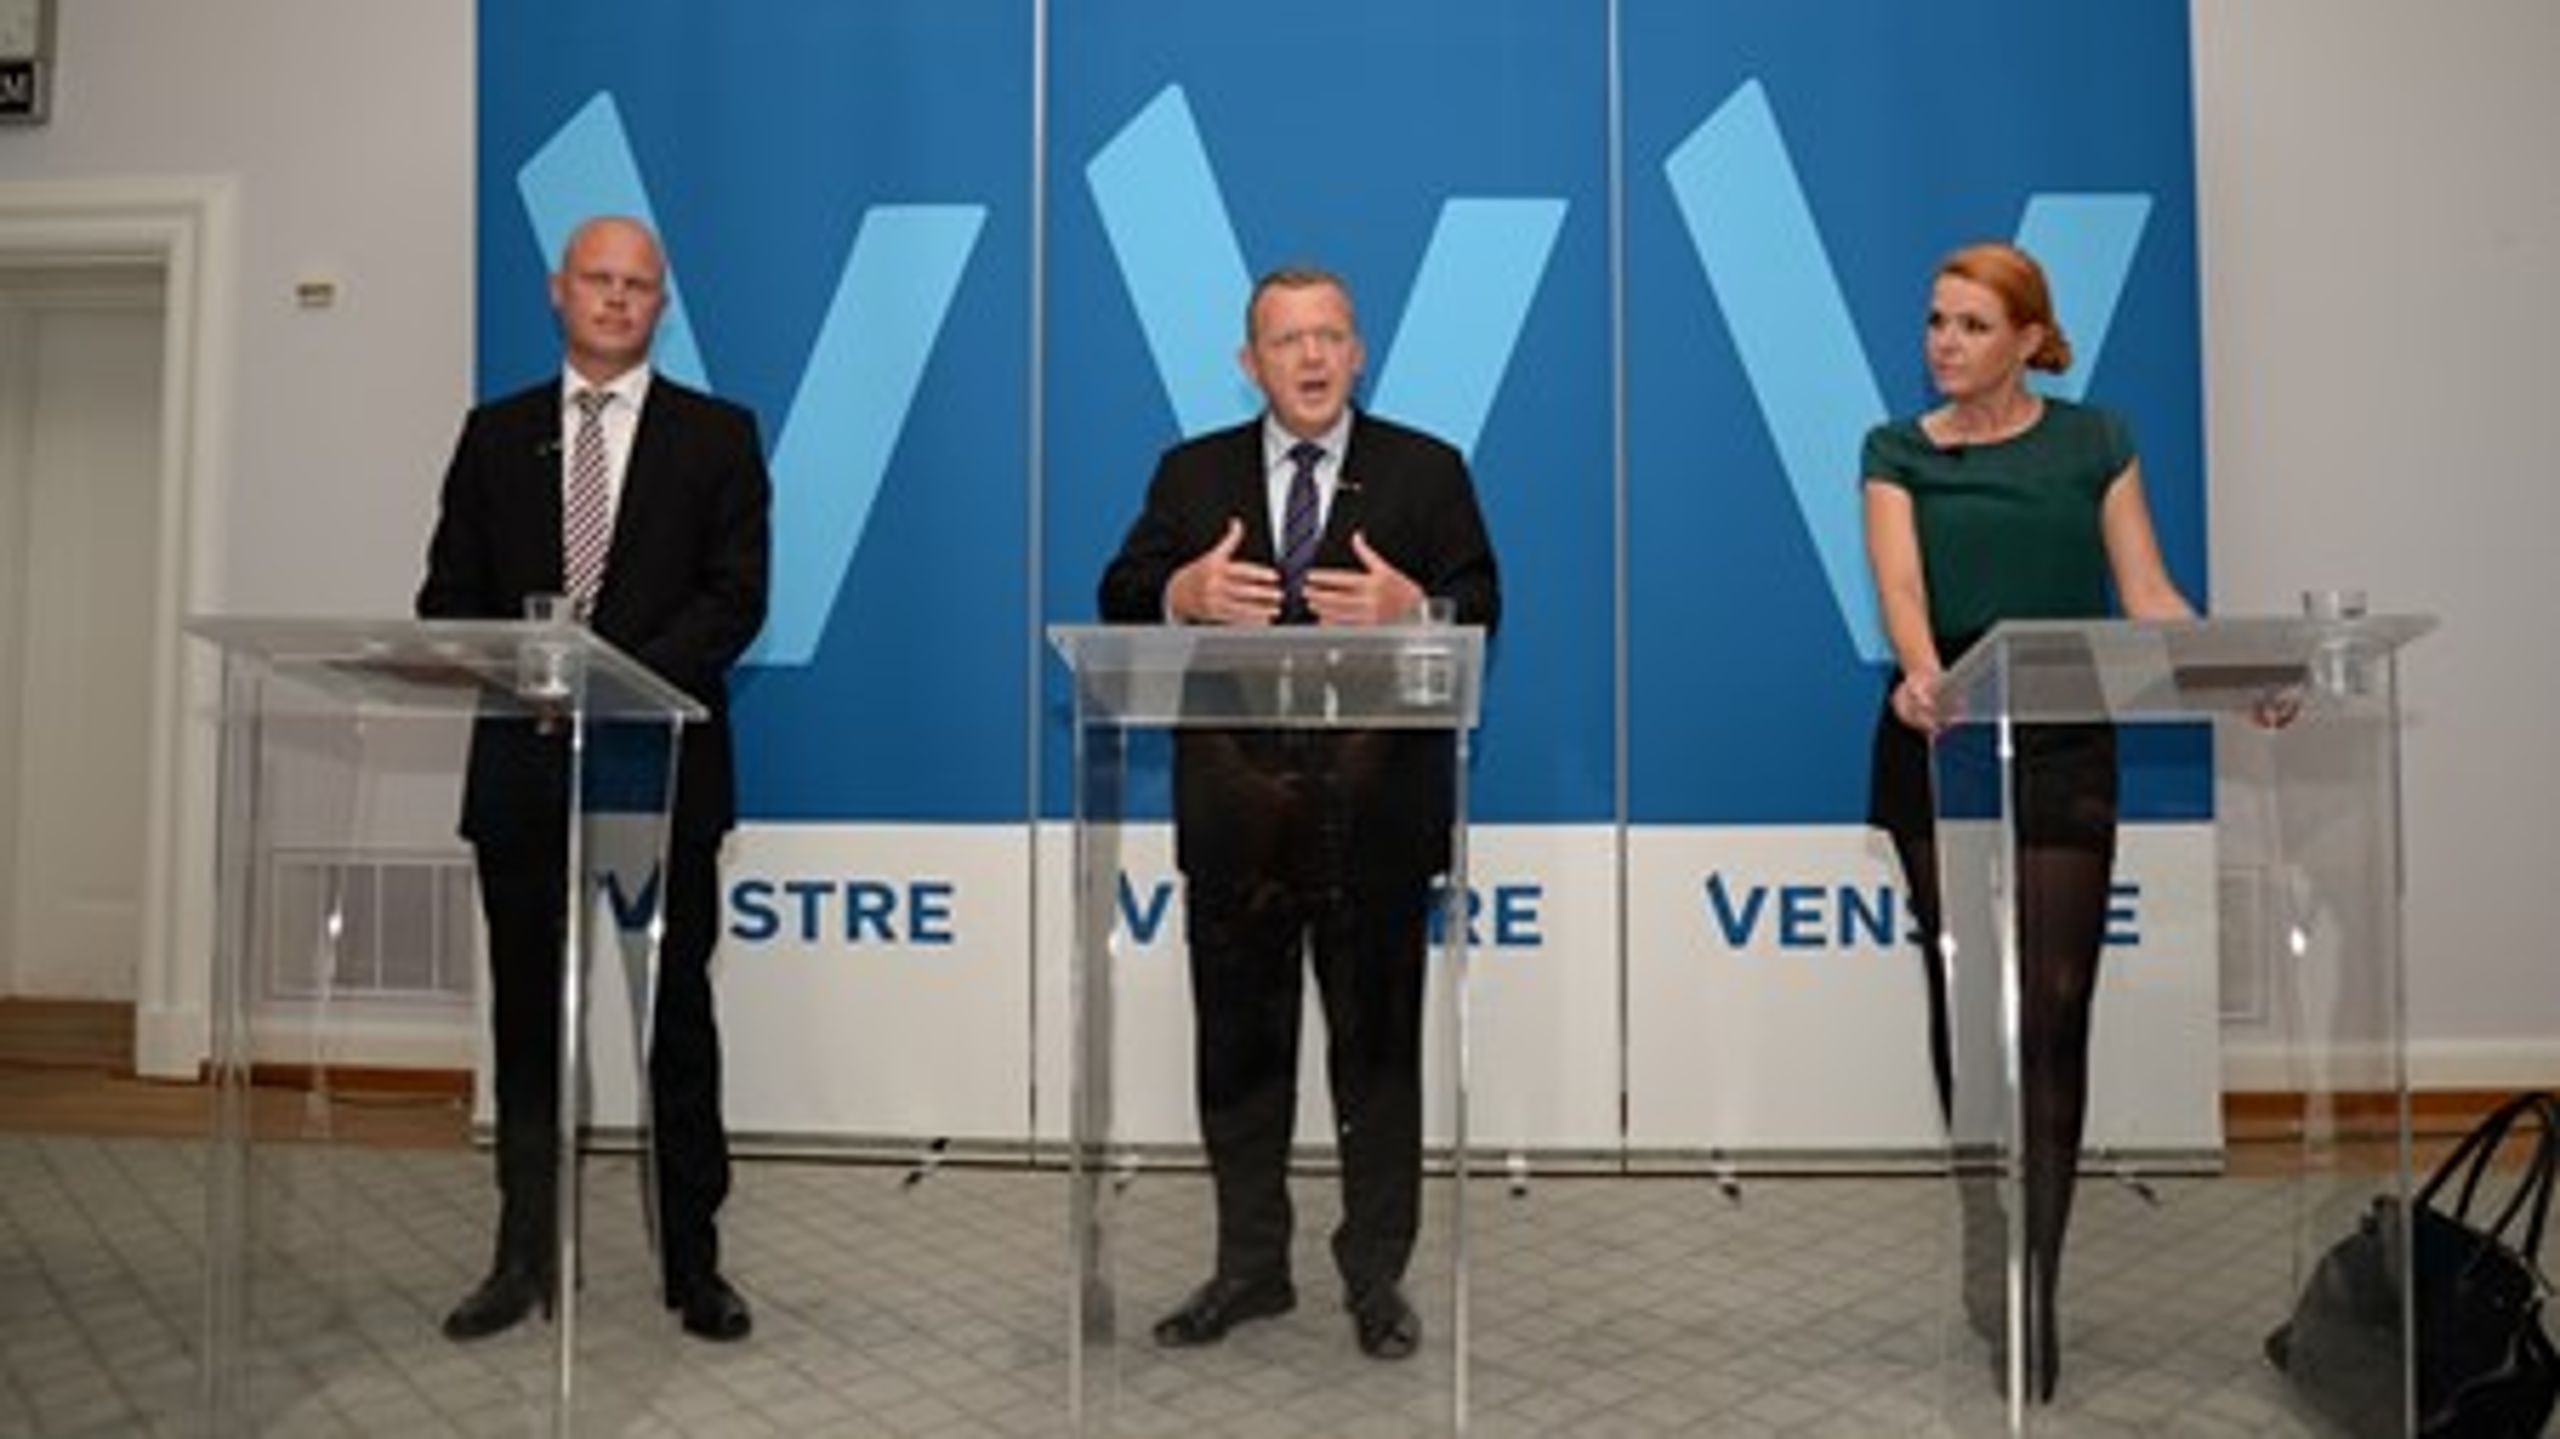 Venstres formand, Lars Løkke Rasmussen, løftede i går&nbsp;sløret for Venstres planer på kræftområdet, da partiet fremlagde sit forslag til finanslov 2015.&nbsp;